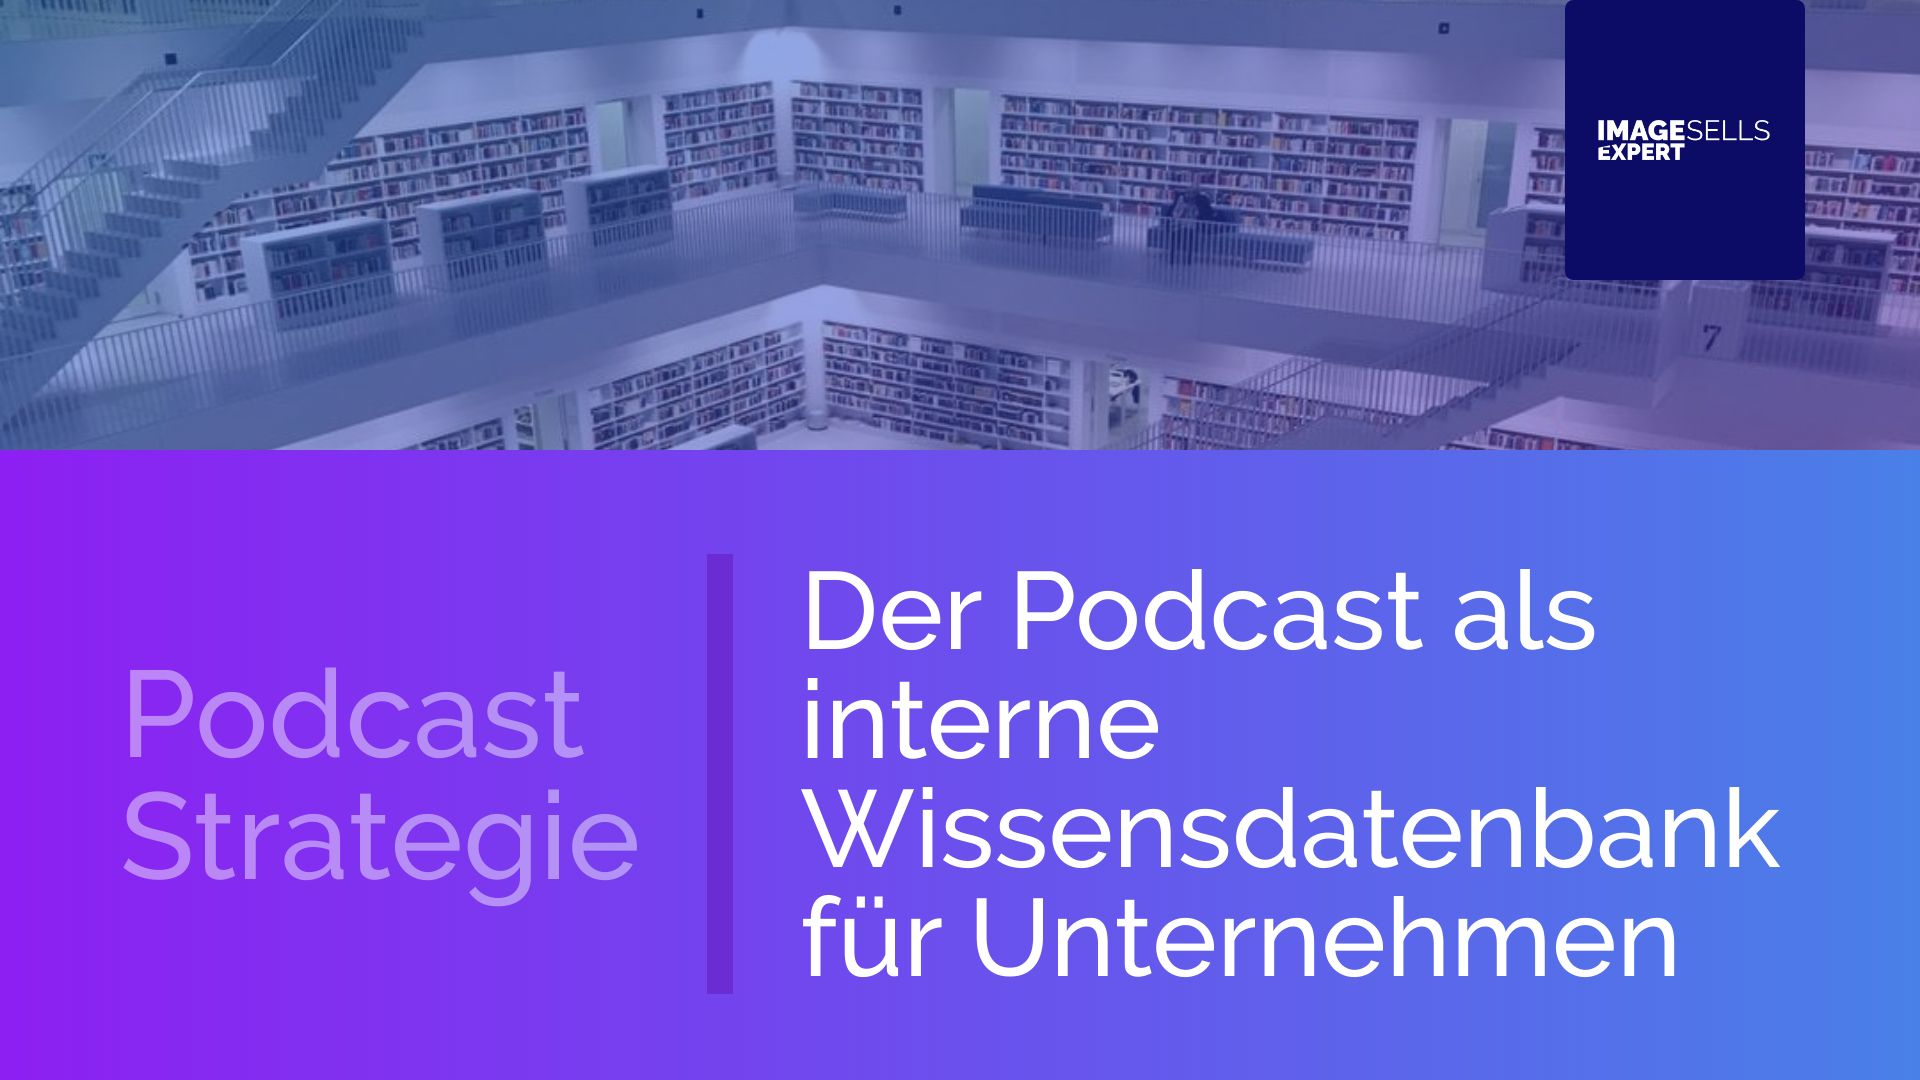 Der Podcast als interne Wissensdatenbank für Unternehmen